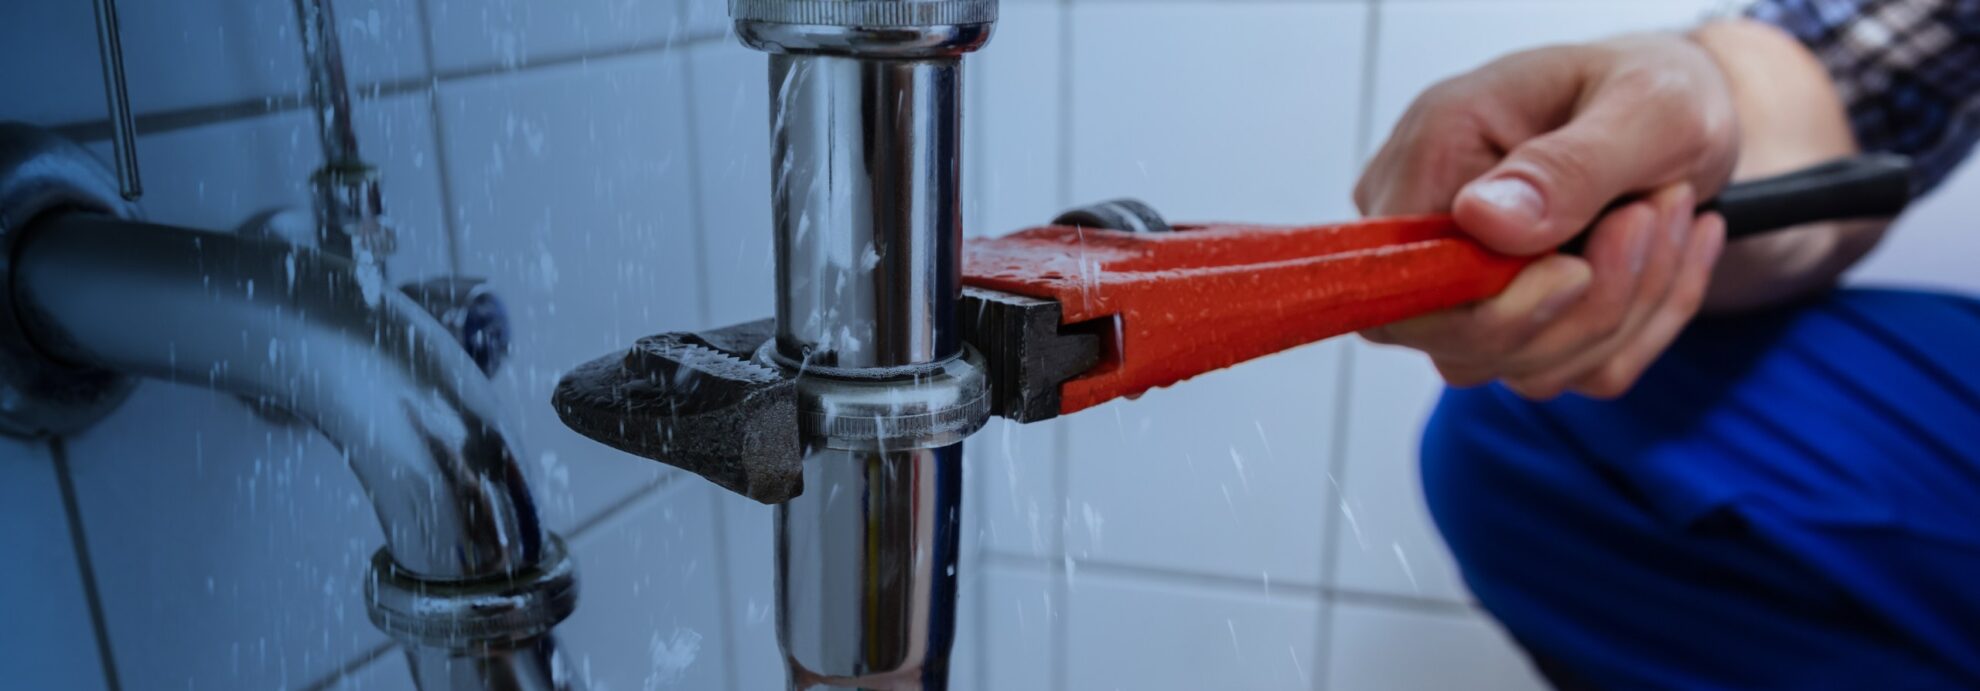 Plumber Water Pipe Leak Repair gastonia nc